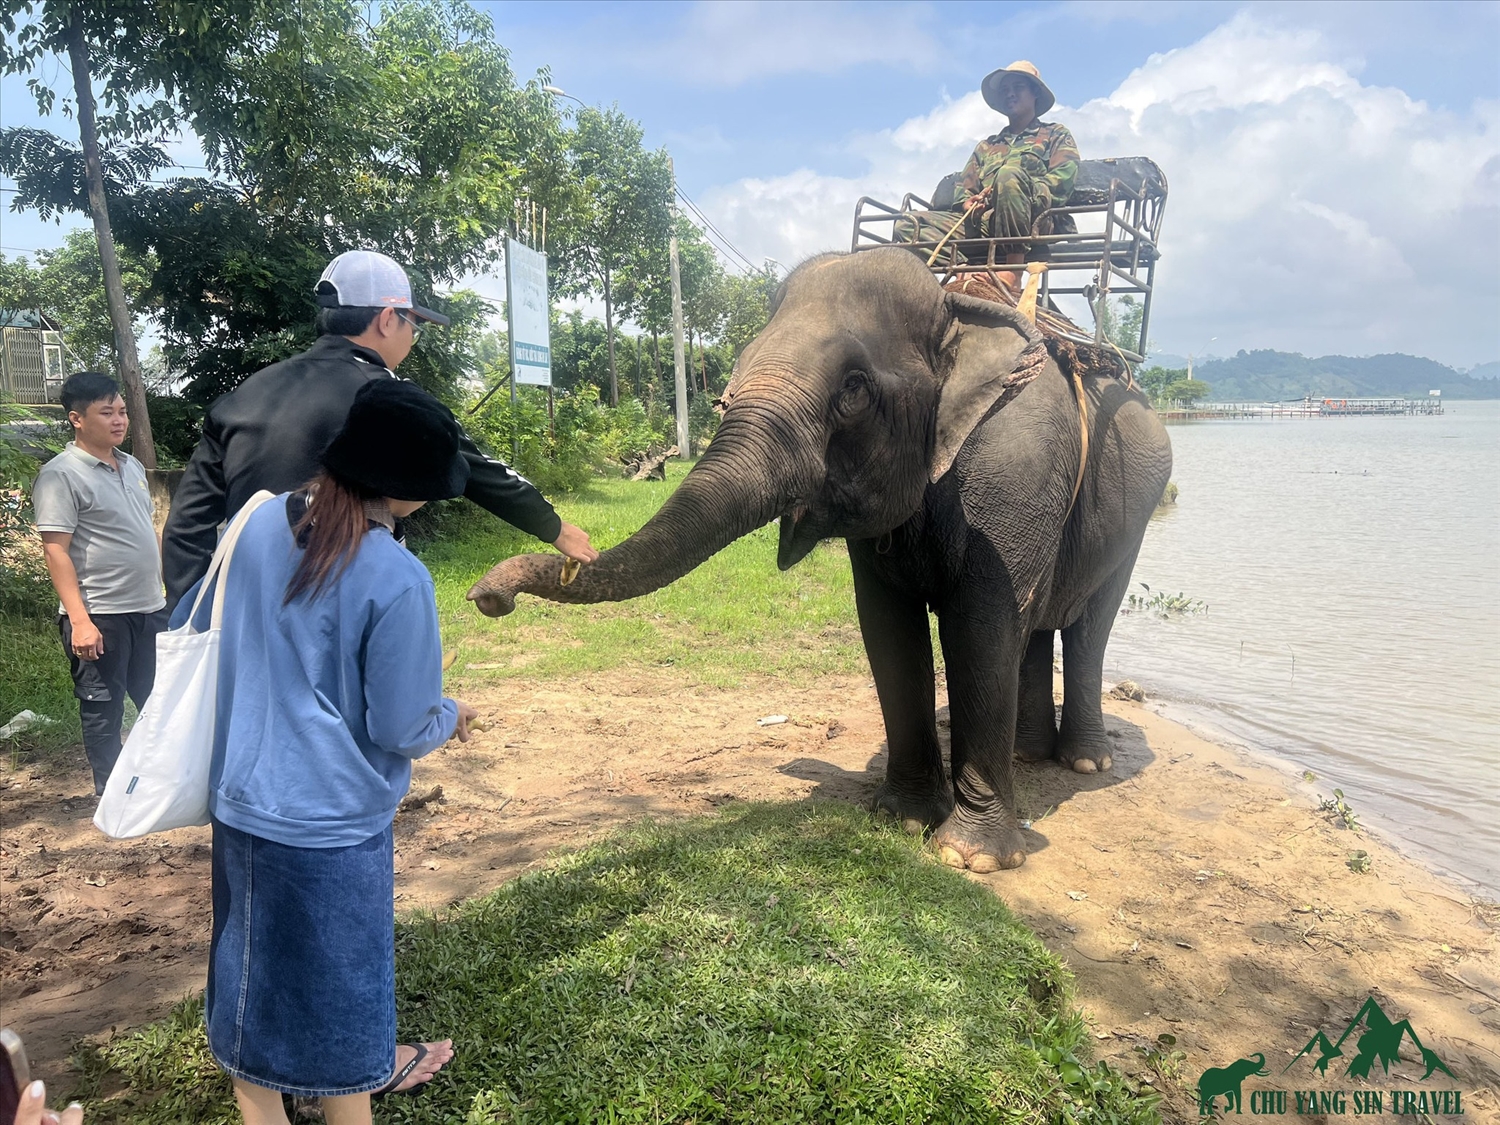 Tham gia tour du lịch của Y Xim, du khách trải nghiệm các hoạt động thân thiện với voi